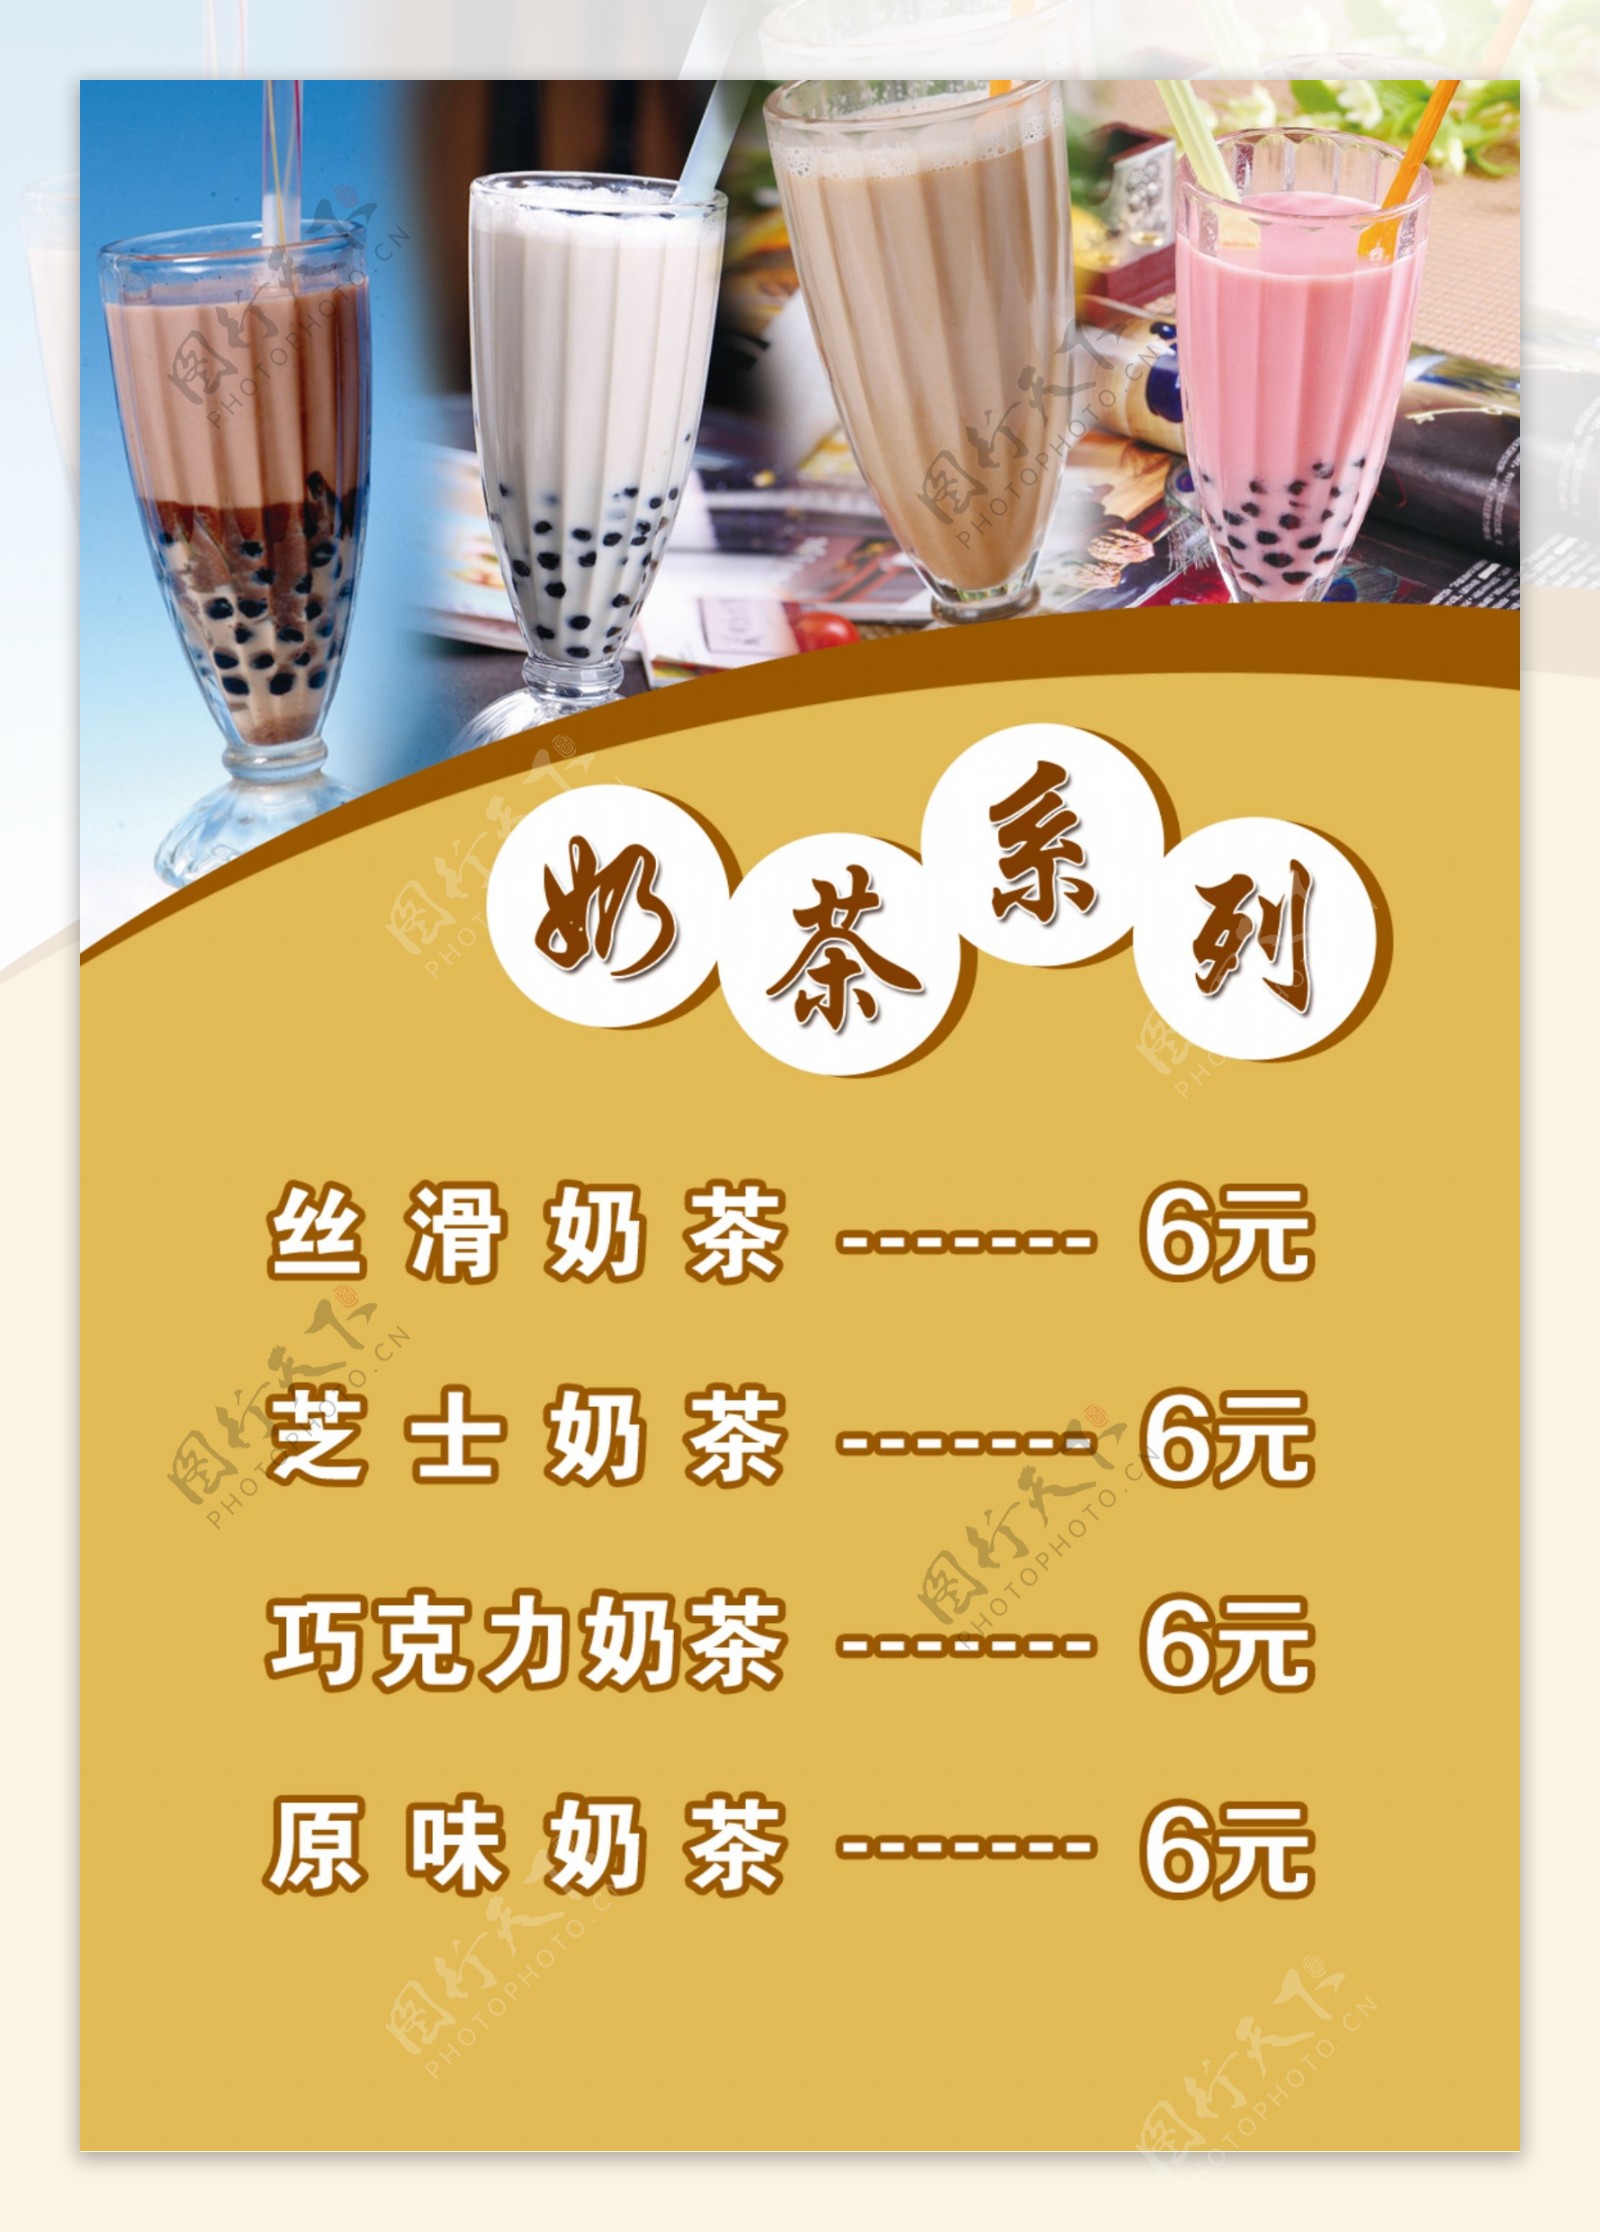 梦幻价格表灯箱七彩虹系列之四奶茶系列